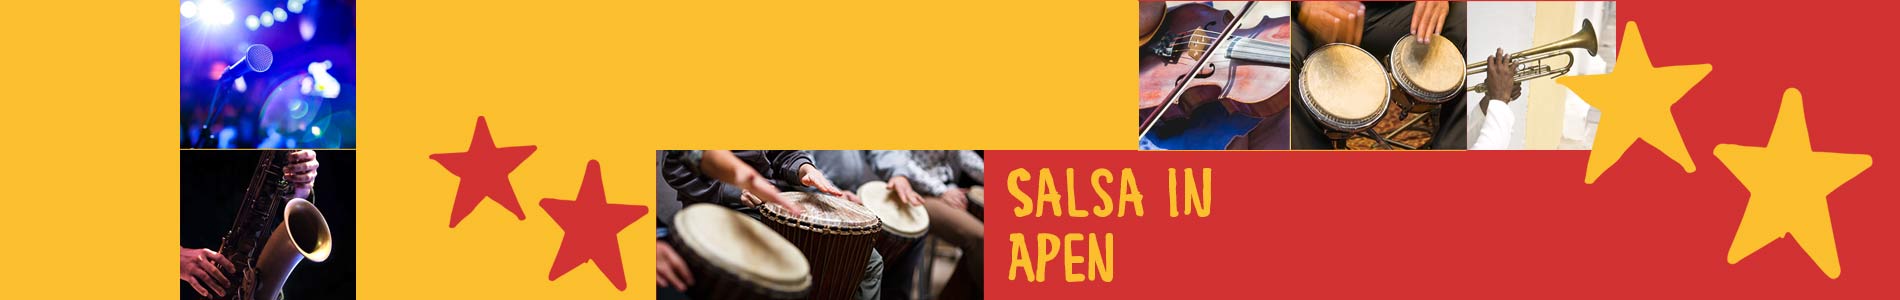 Salsa in Apen – Salsa lernen und tanzen, Tanzkurse, Partys, Veranstaltungen